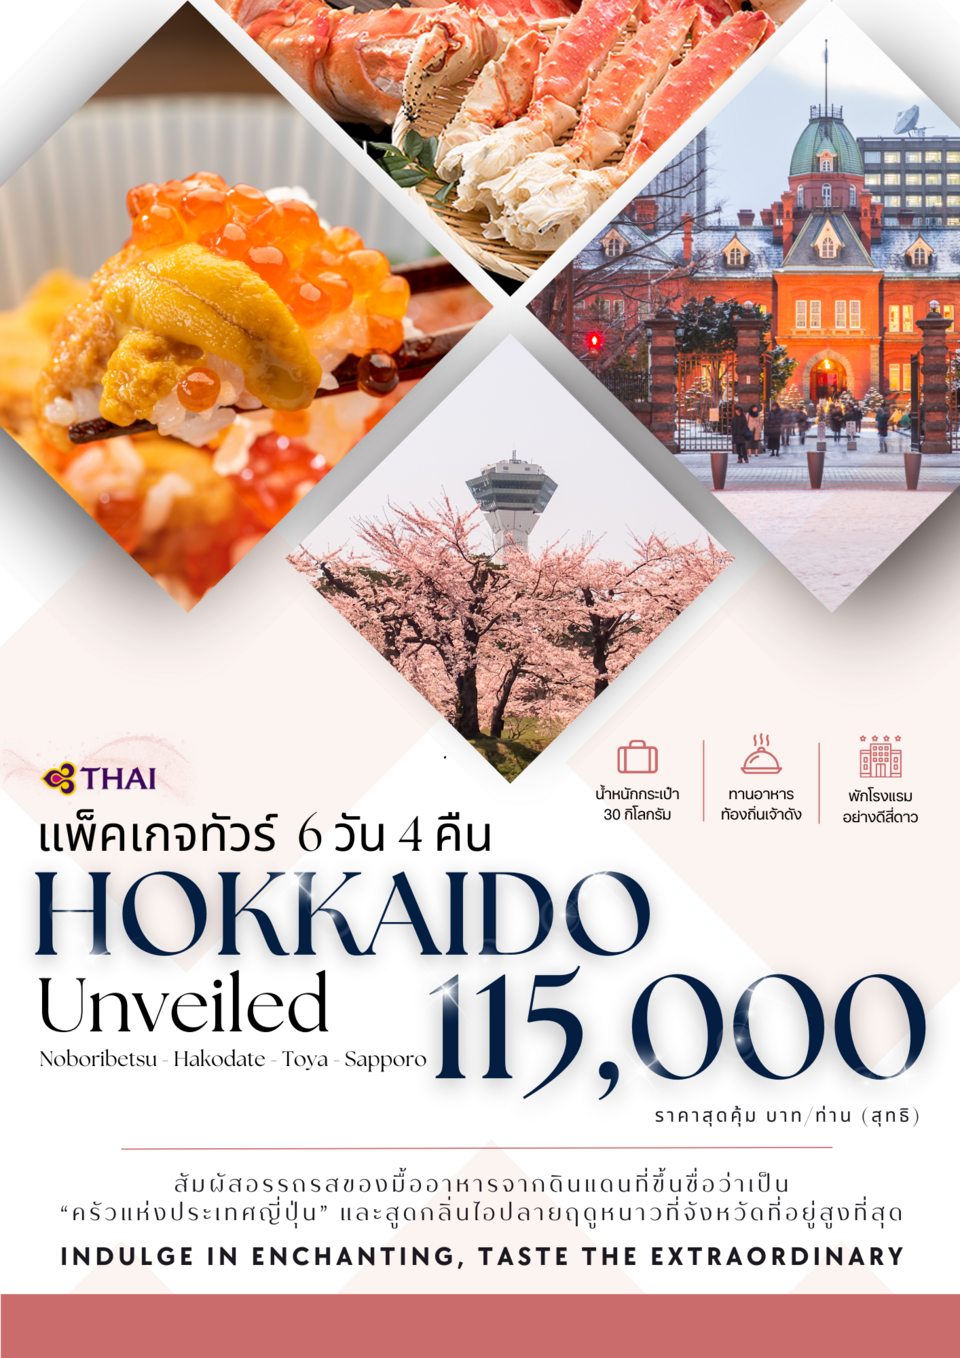 HOKKAIDO ฮอกไกโด โนโบริเบทสึ ฮาโกดาเตะ โทยะ ซัปโปโร 6 วัน 4 คืน เดินทาง 30 เม.ย.67 - 05 พ.ค.67 ราคา 115,000.- Thai Airways (TG)